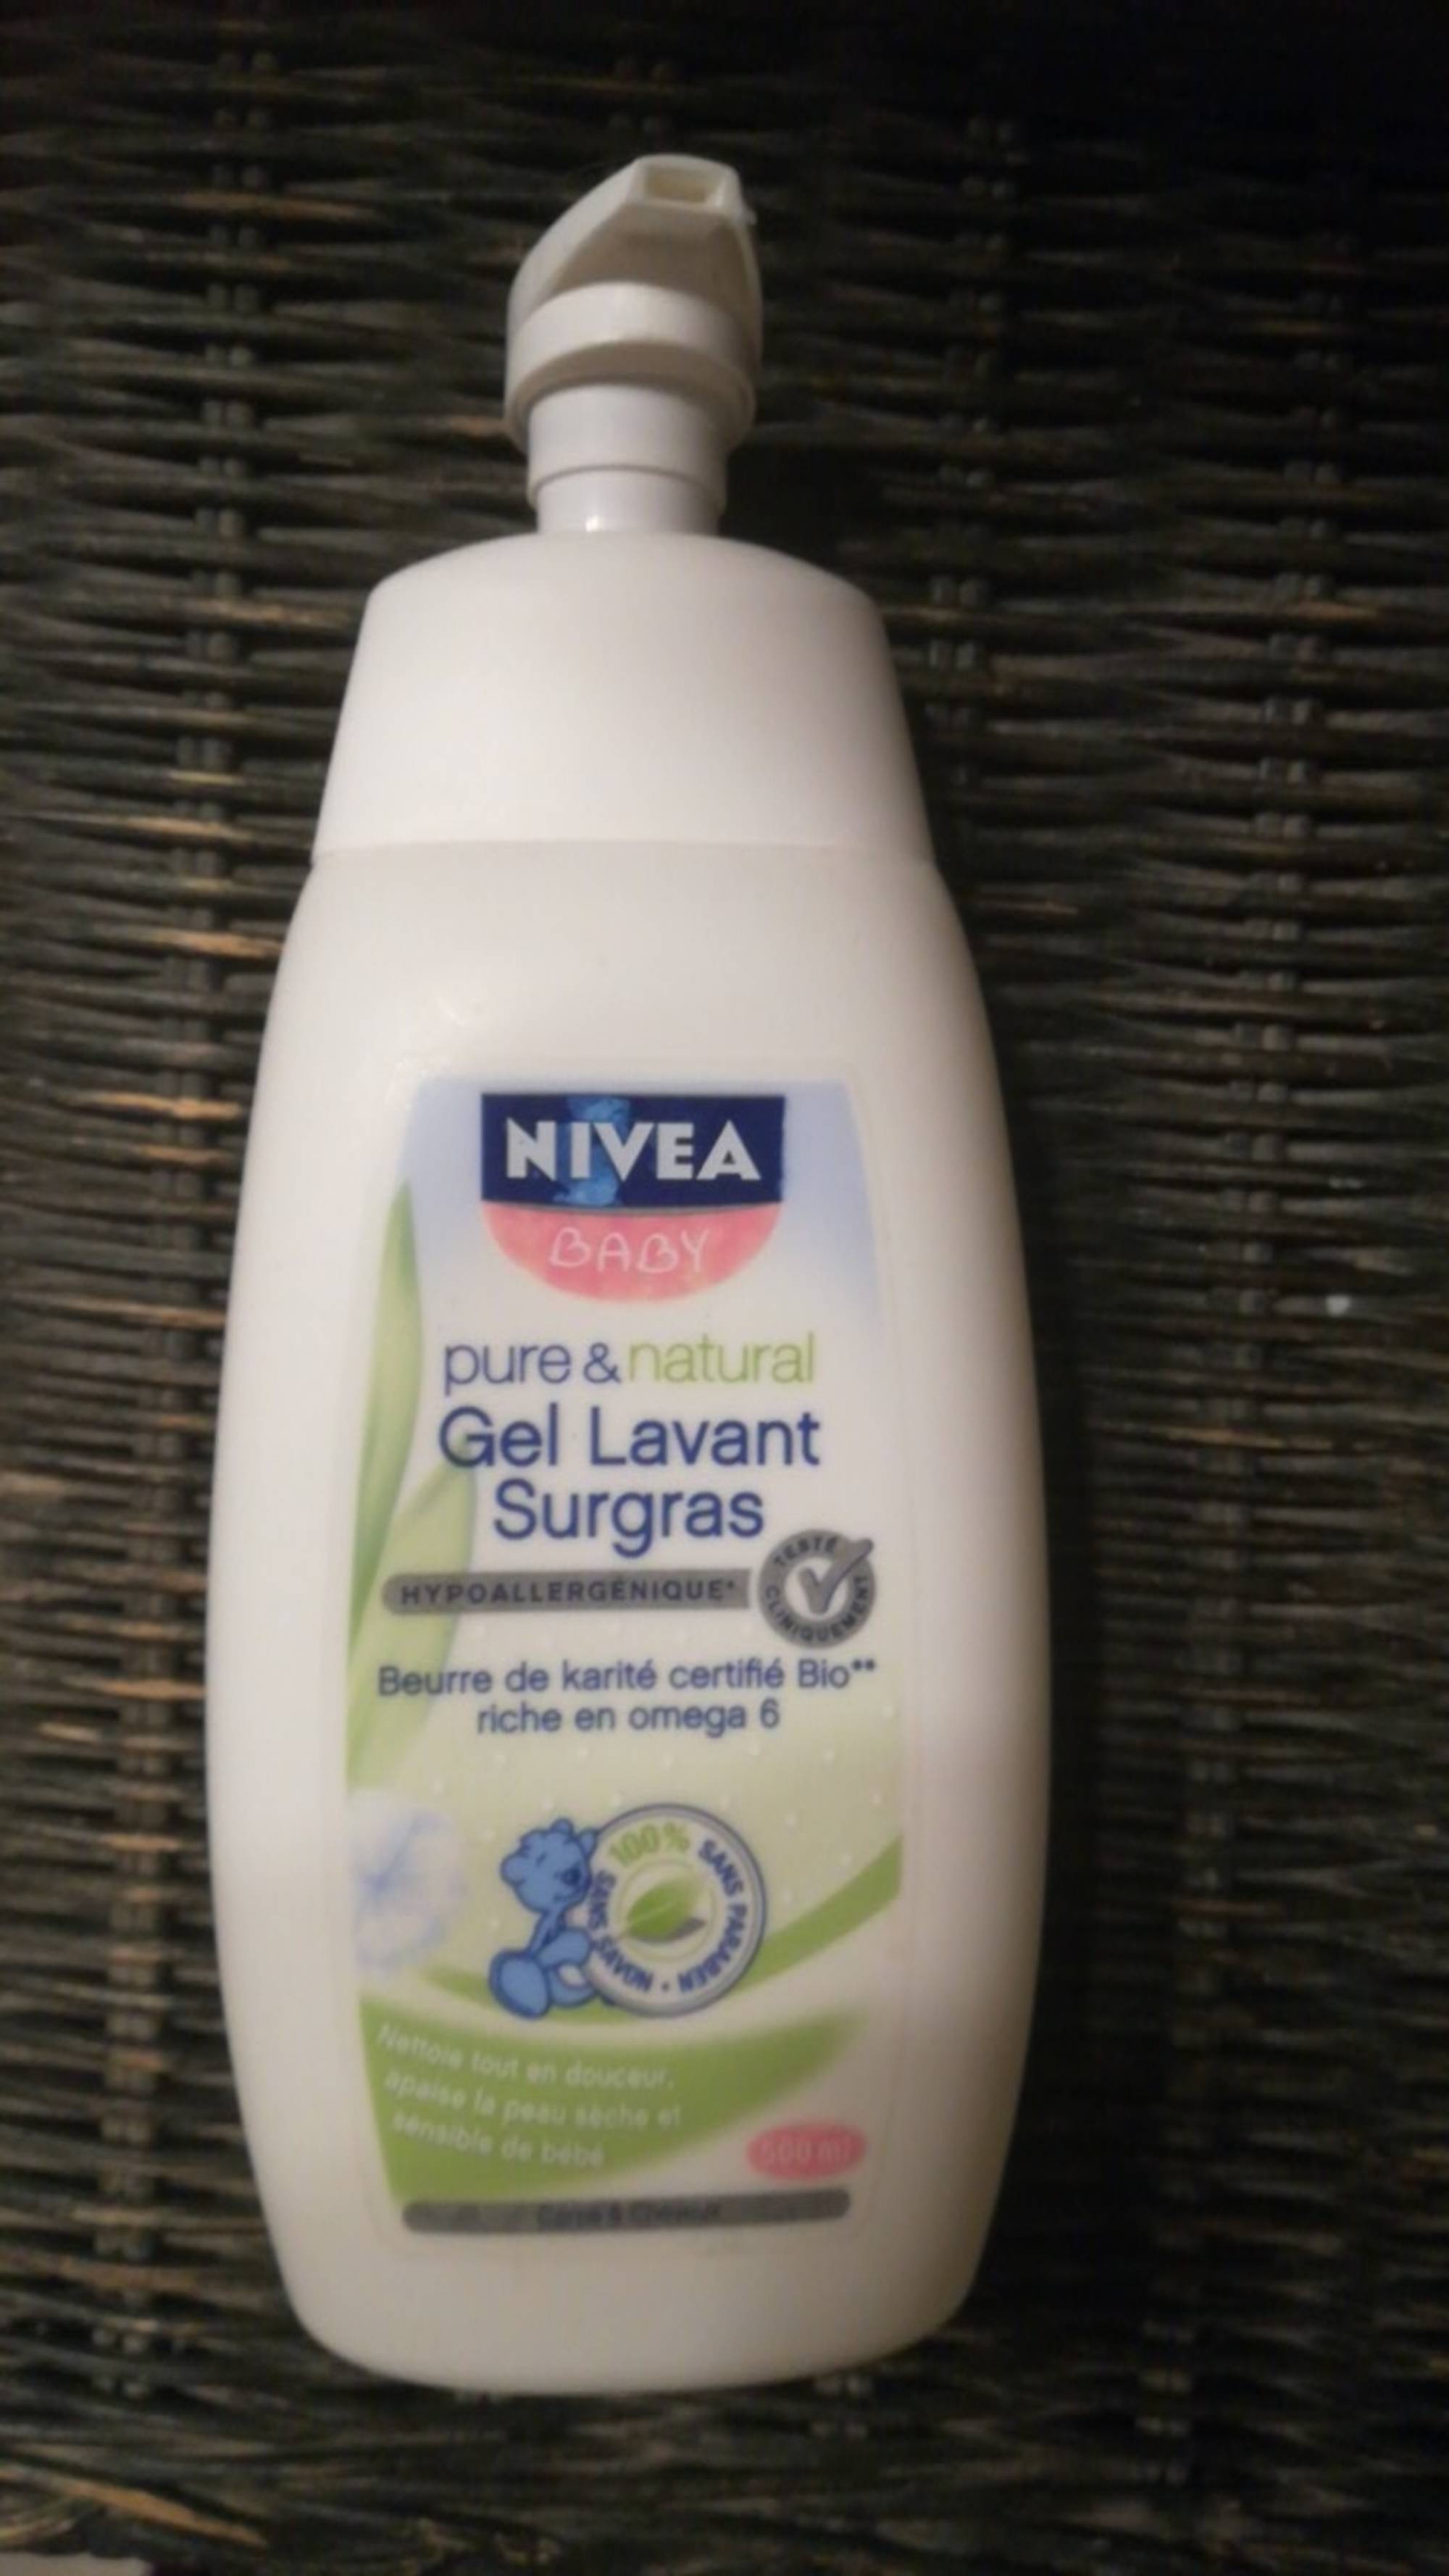 NIVEA - Baby Pure & natural - Gel lavant surgras